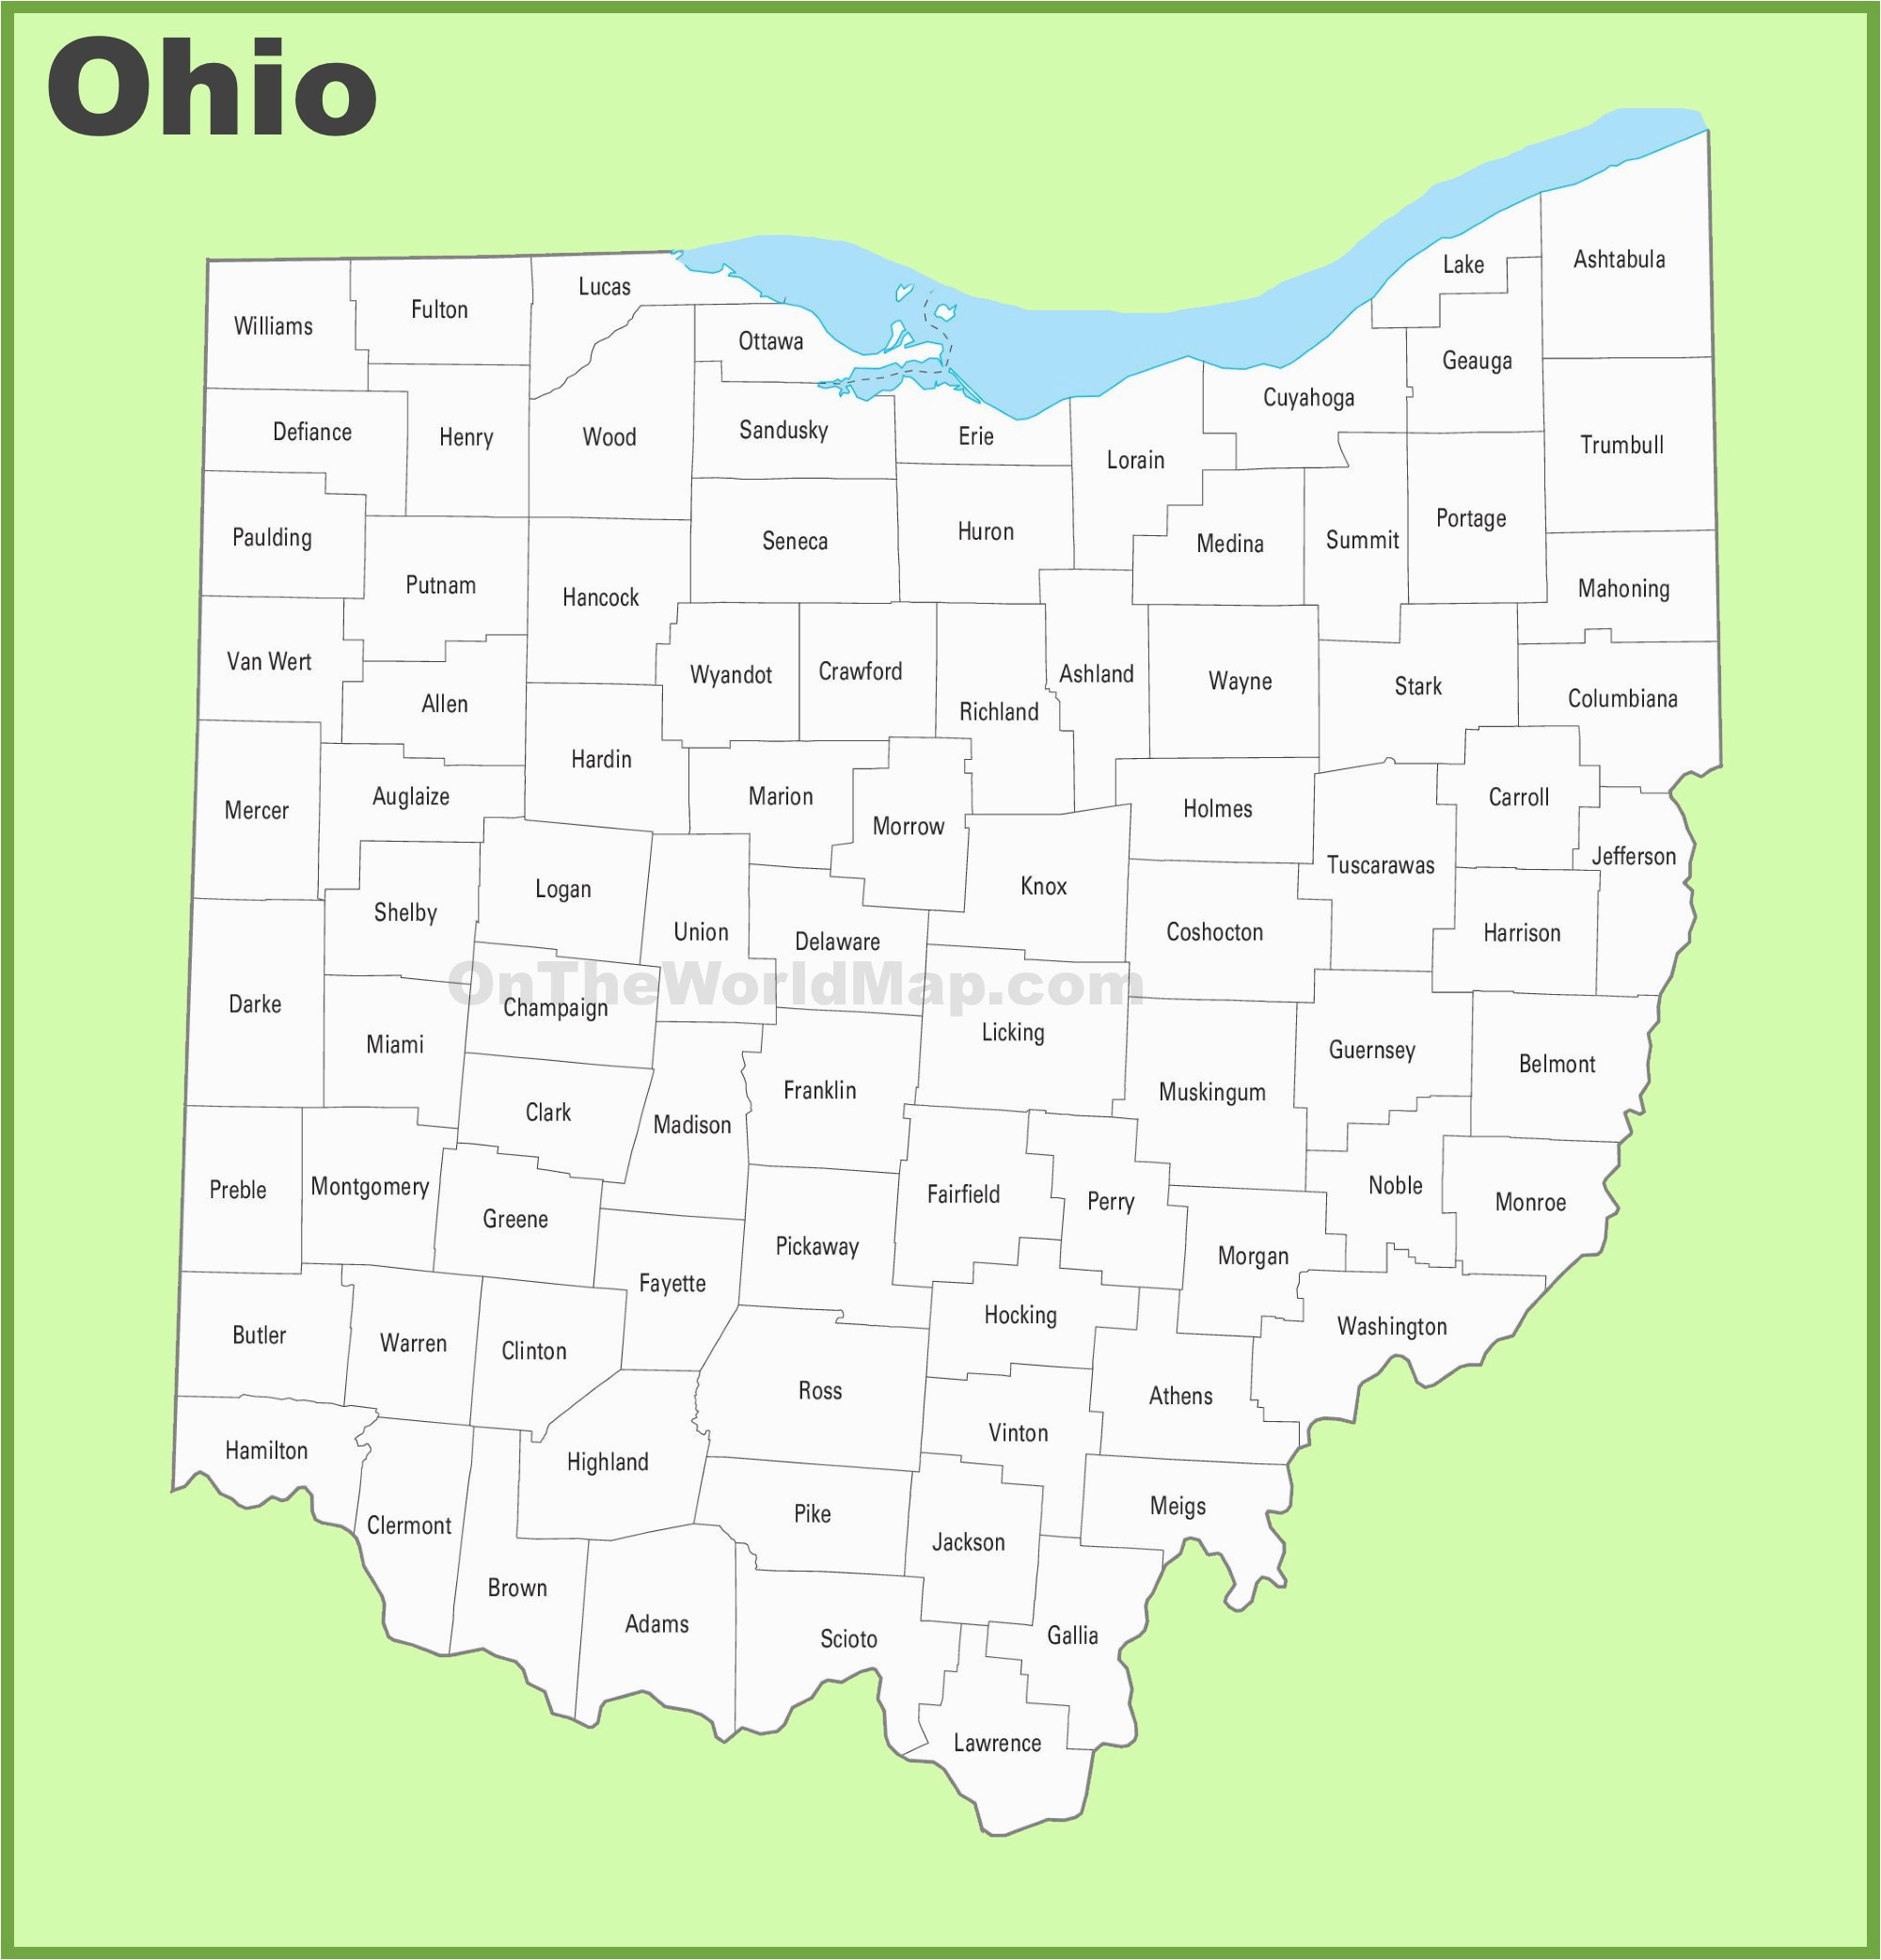 Ashland County Ohio Township Map 29 Ashland County Ohio Map Ny County Map Of Ashland County Ohio Township Map 1 